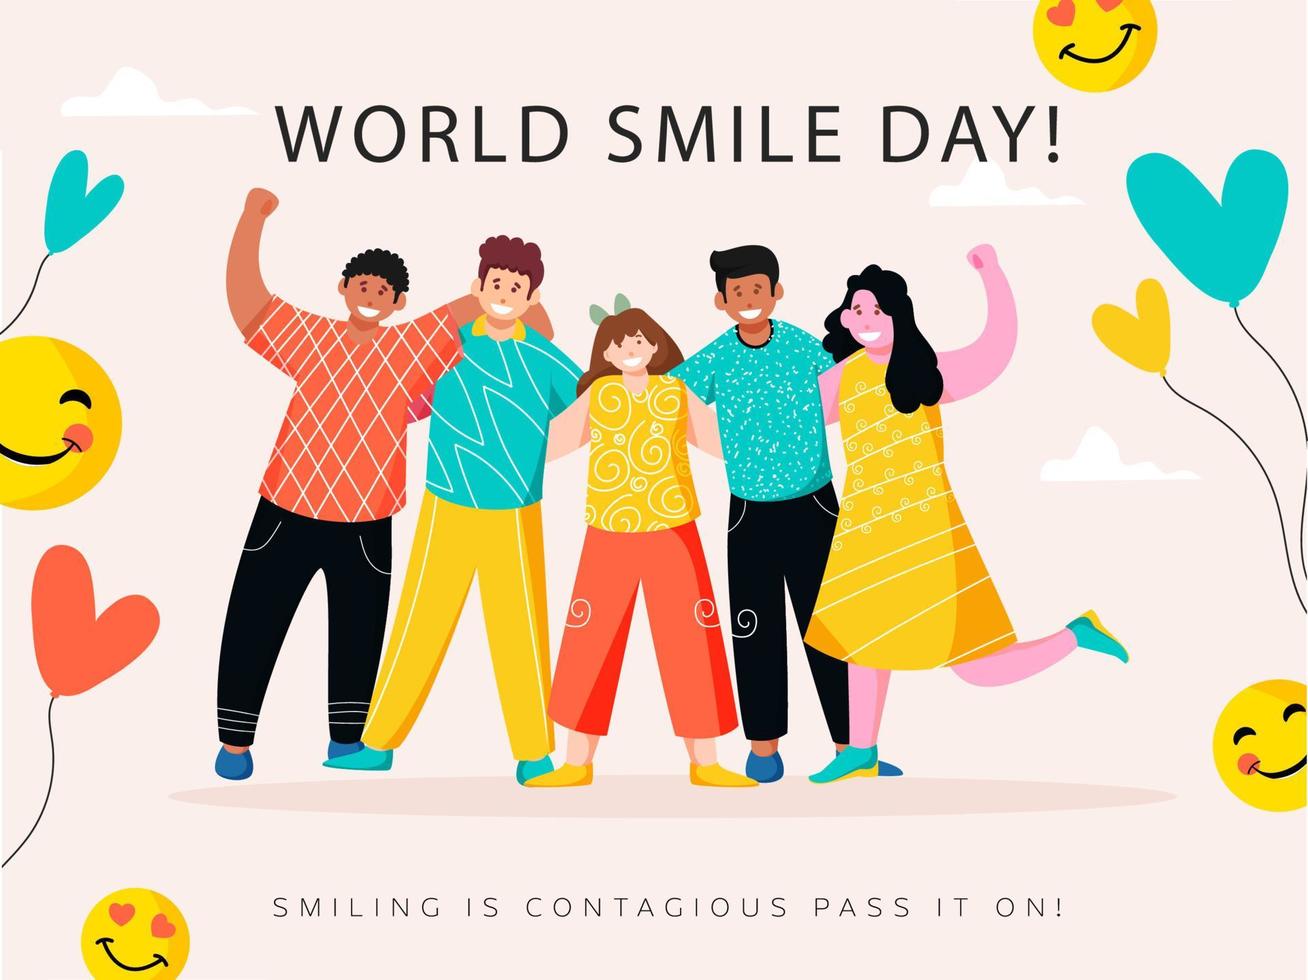 grupo de alegre joven Niños y muchachas en pie juntos con dado mensaje sonriente es contagioso pasar eso en para mundo sonrisa día. vector